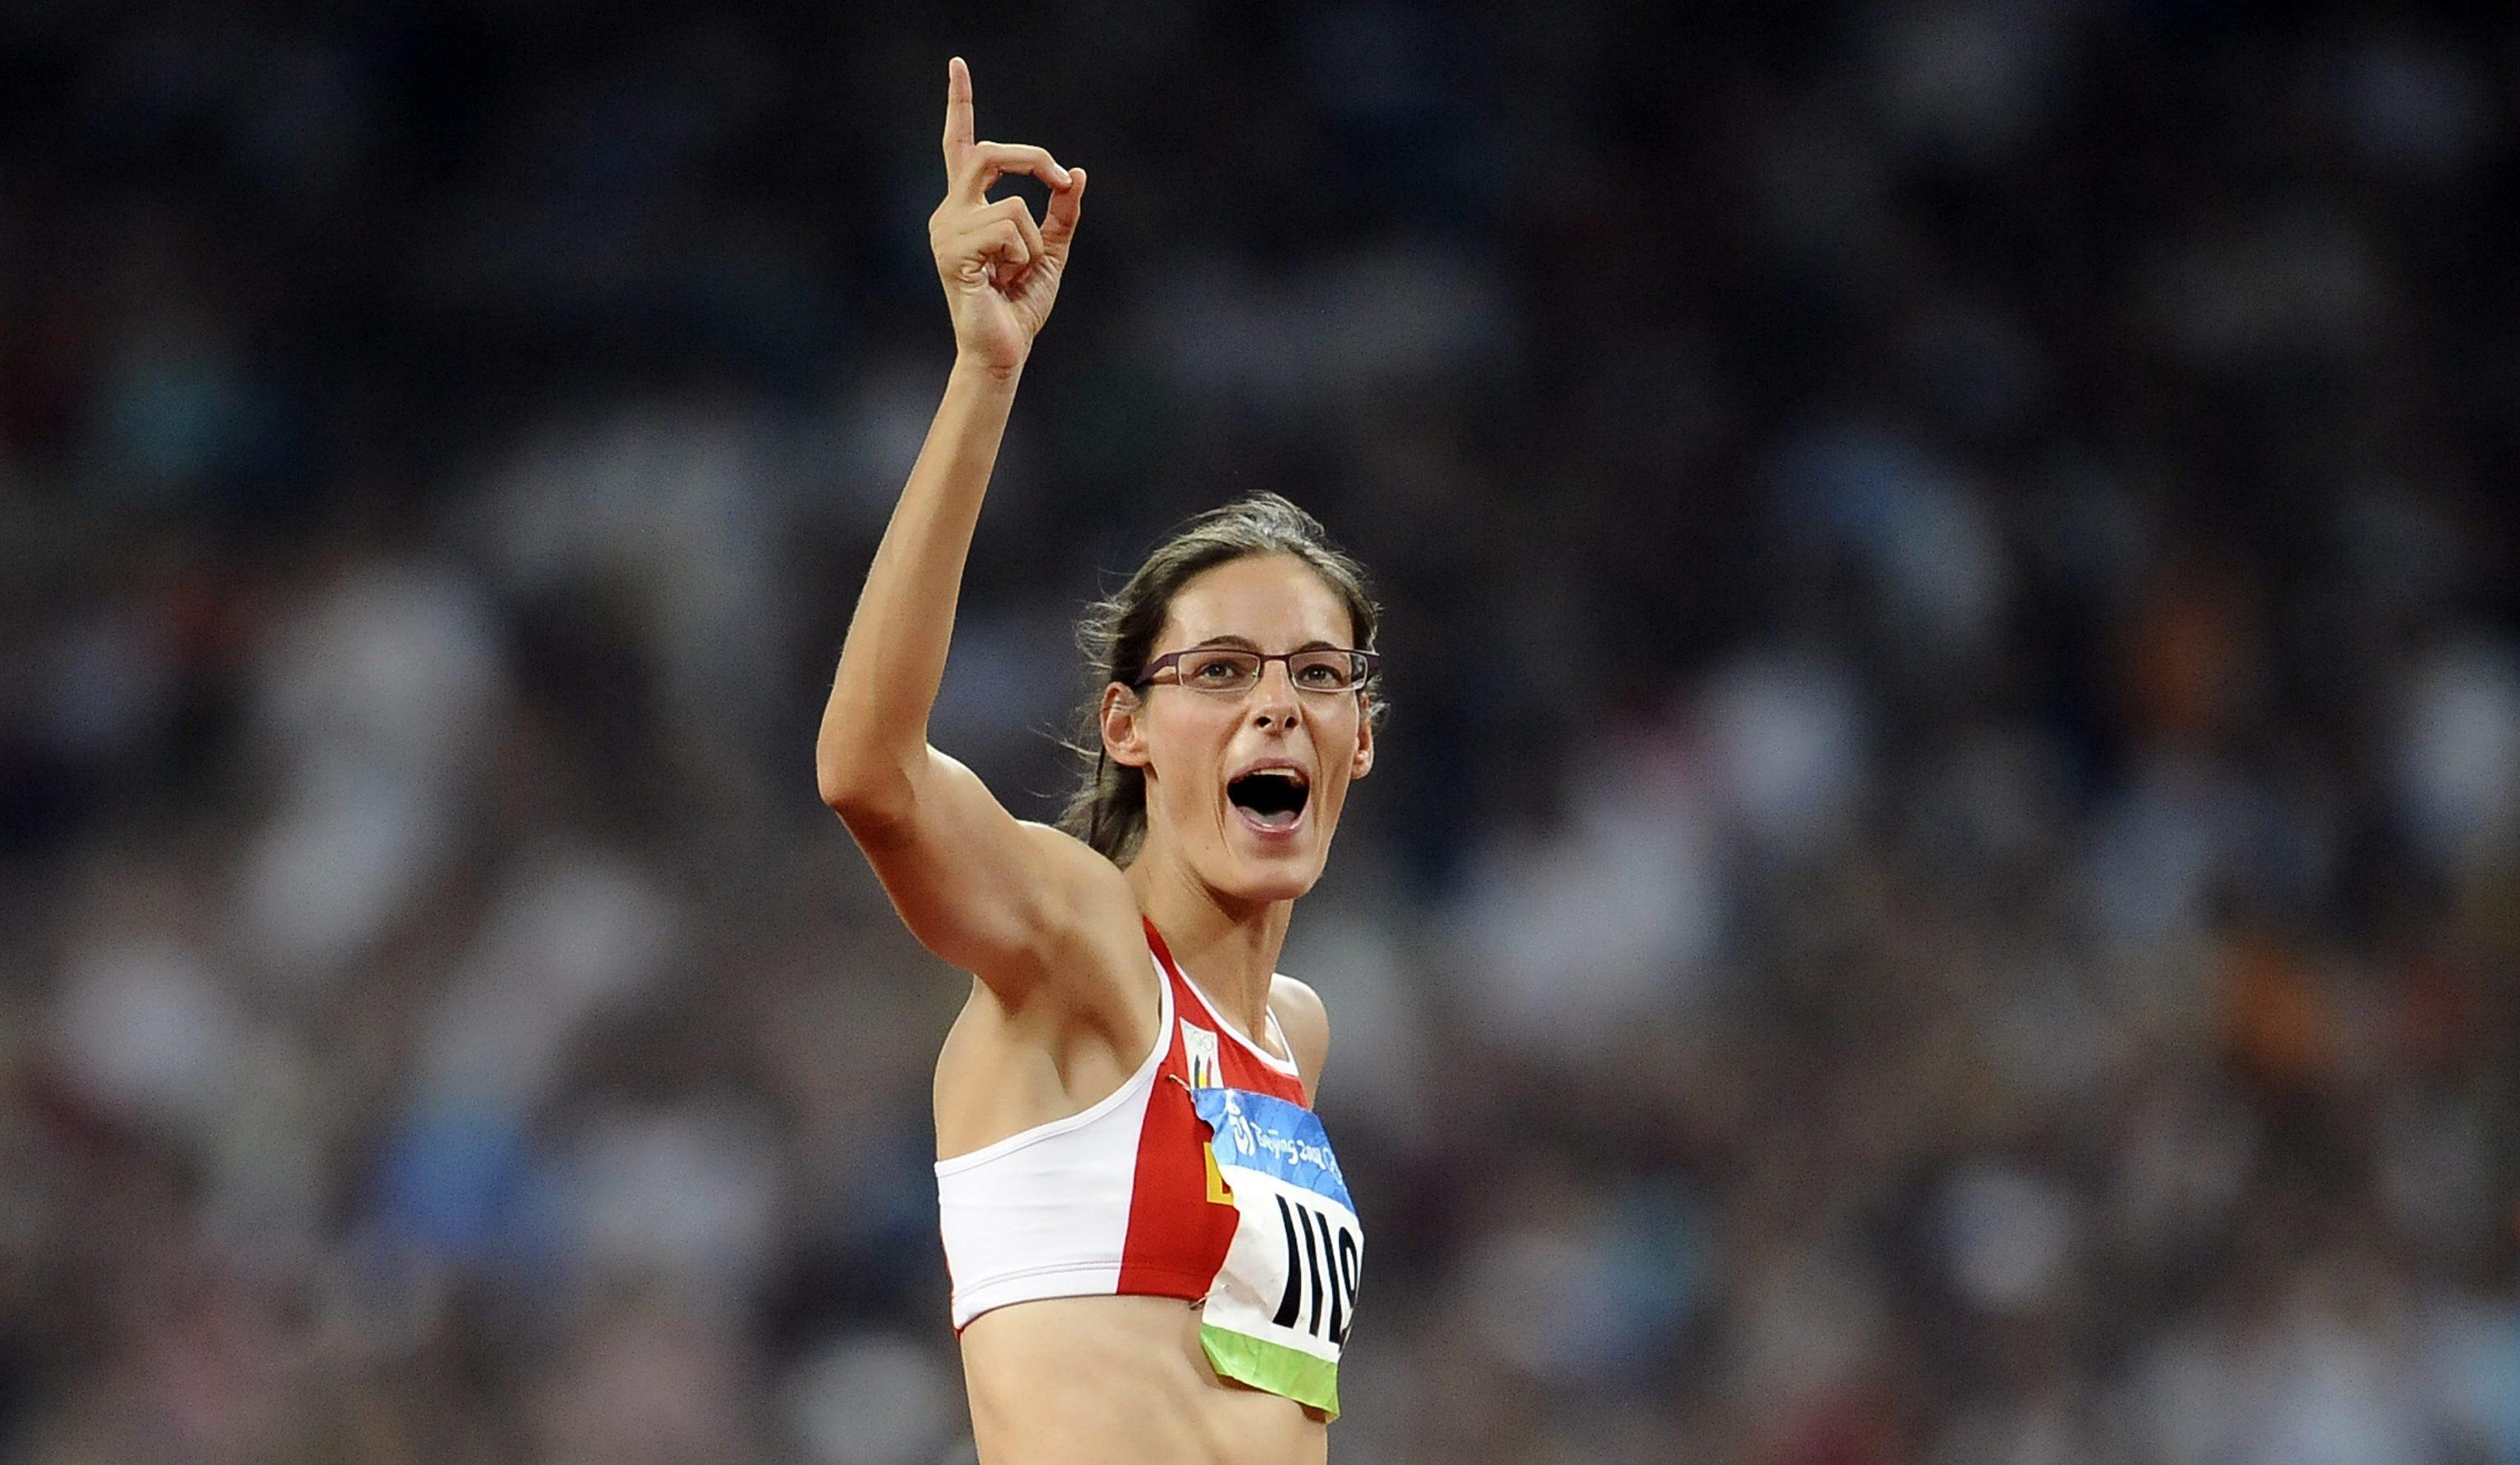 Tia tijdens de Olympische Spelen in Peking (2008) waar ze goud won. (foto belga) BELGA PHOTO BENOIT DOPPAGNE